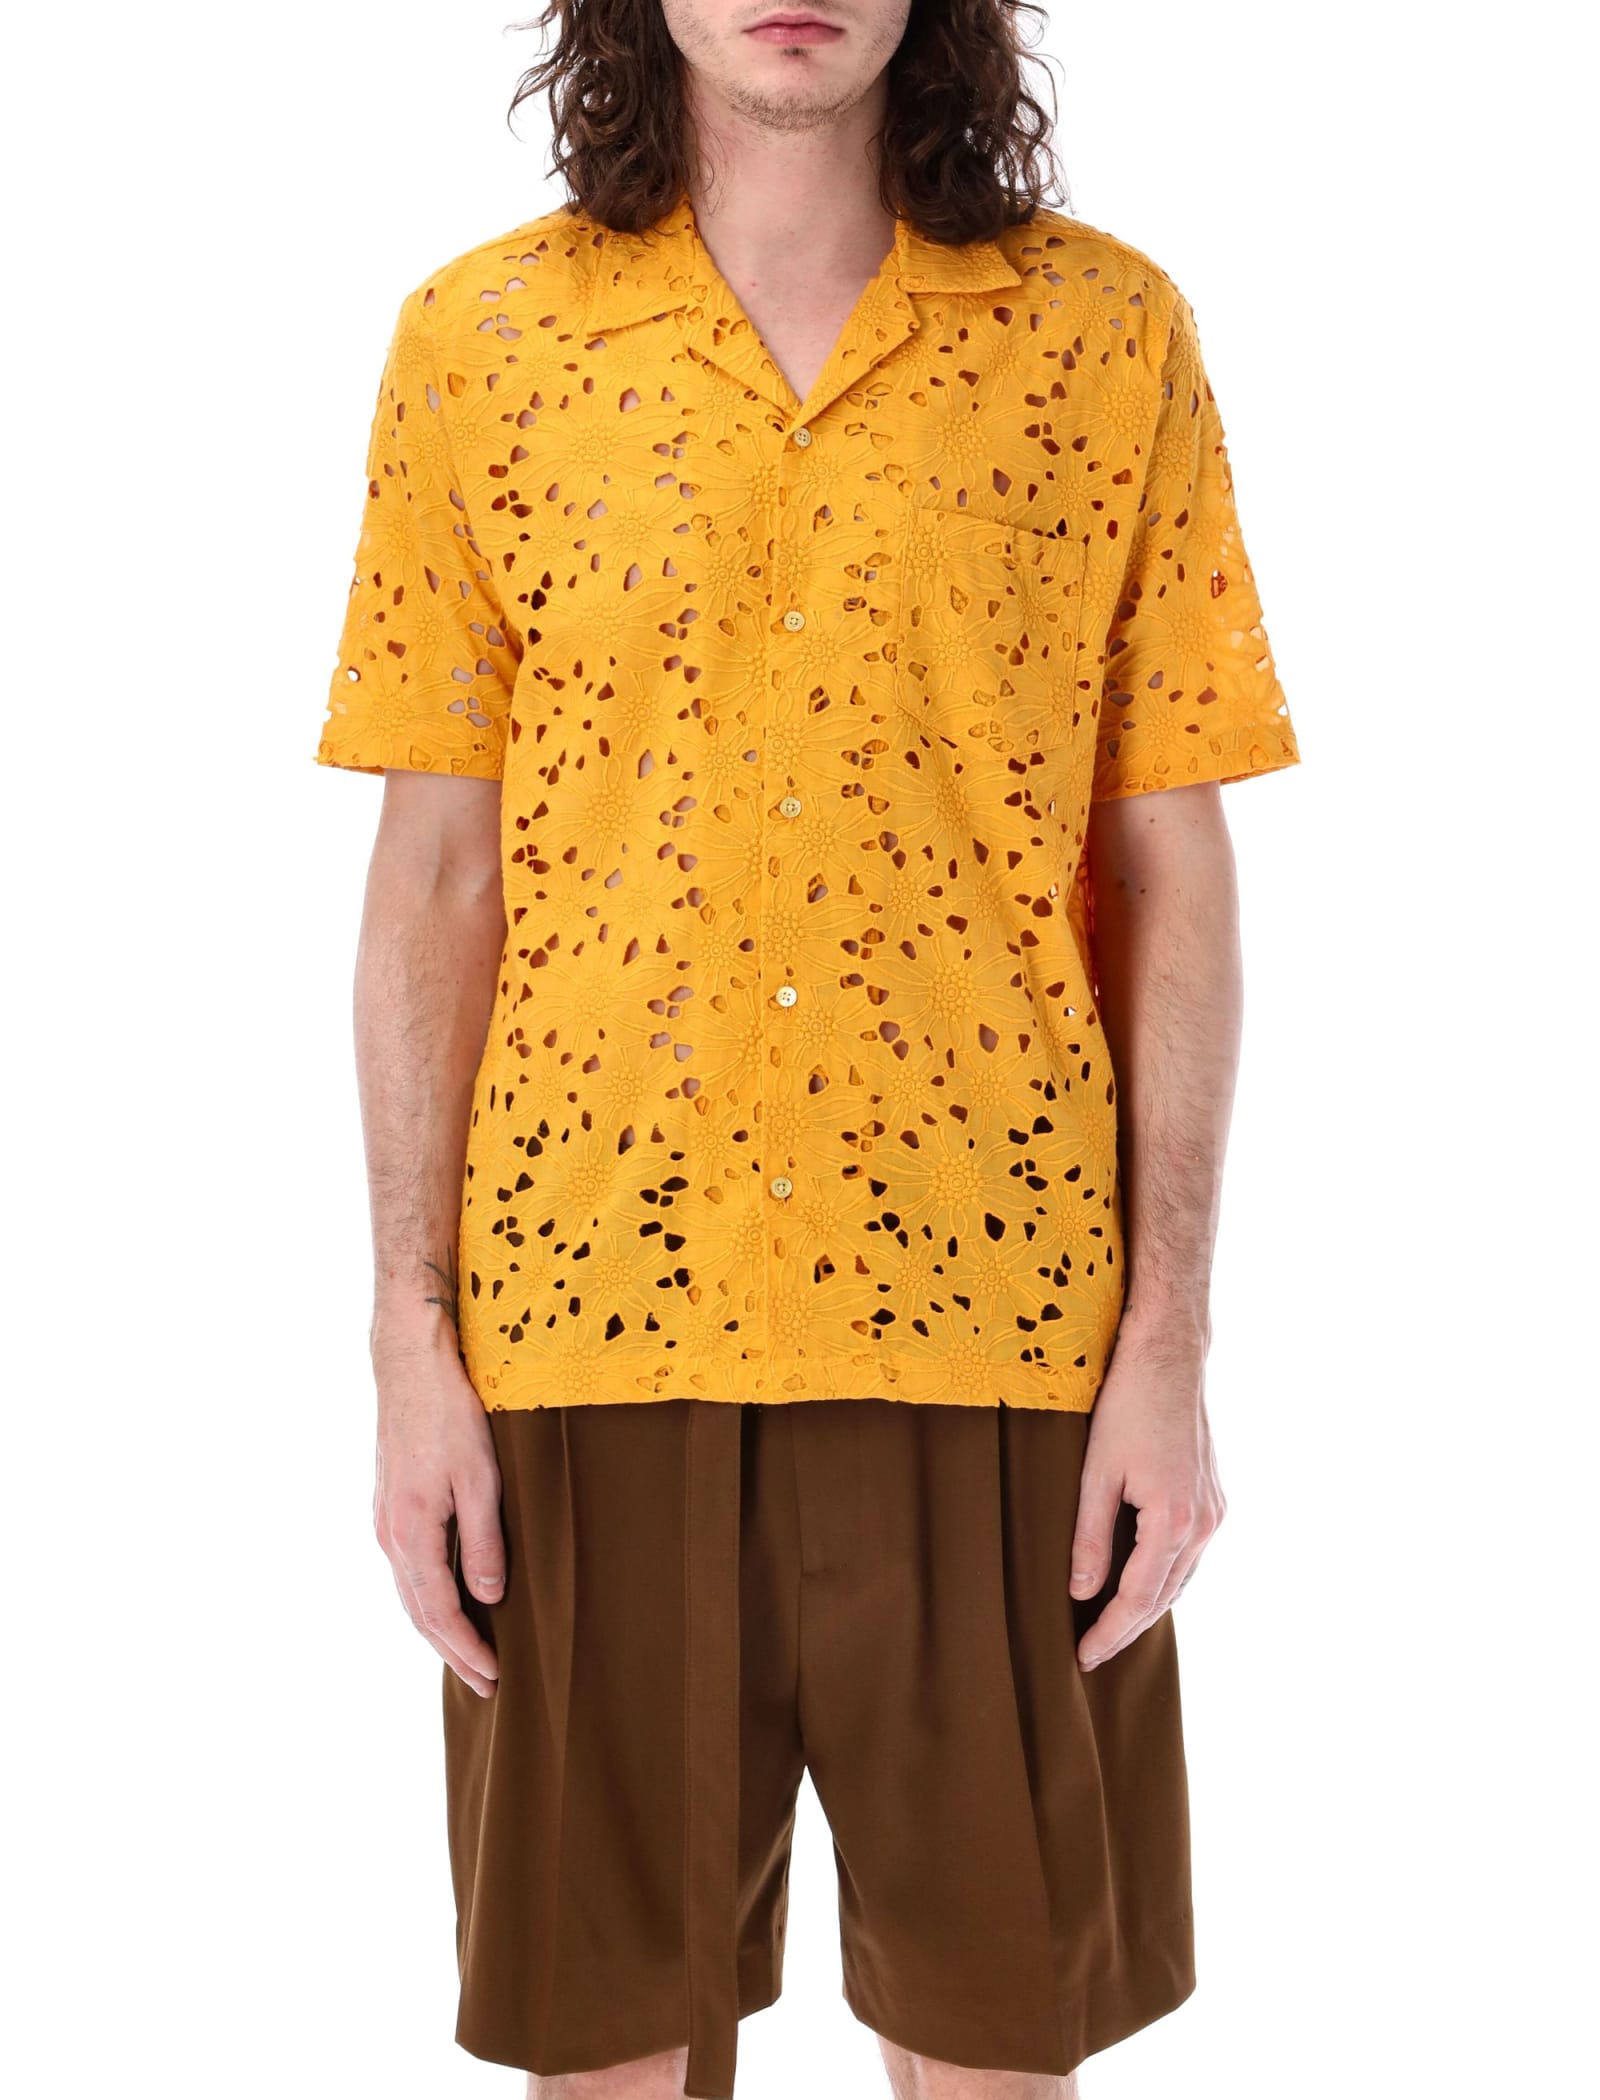 Duncan Shirt